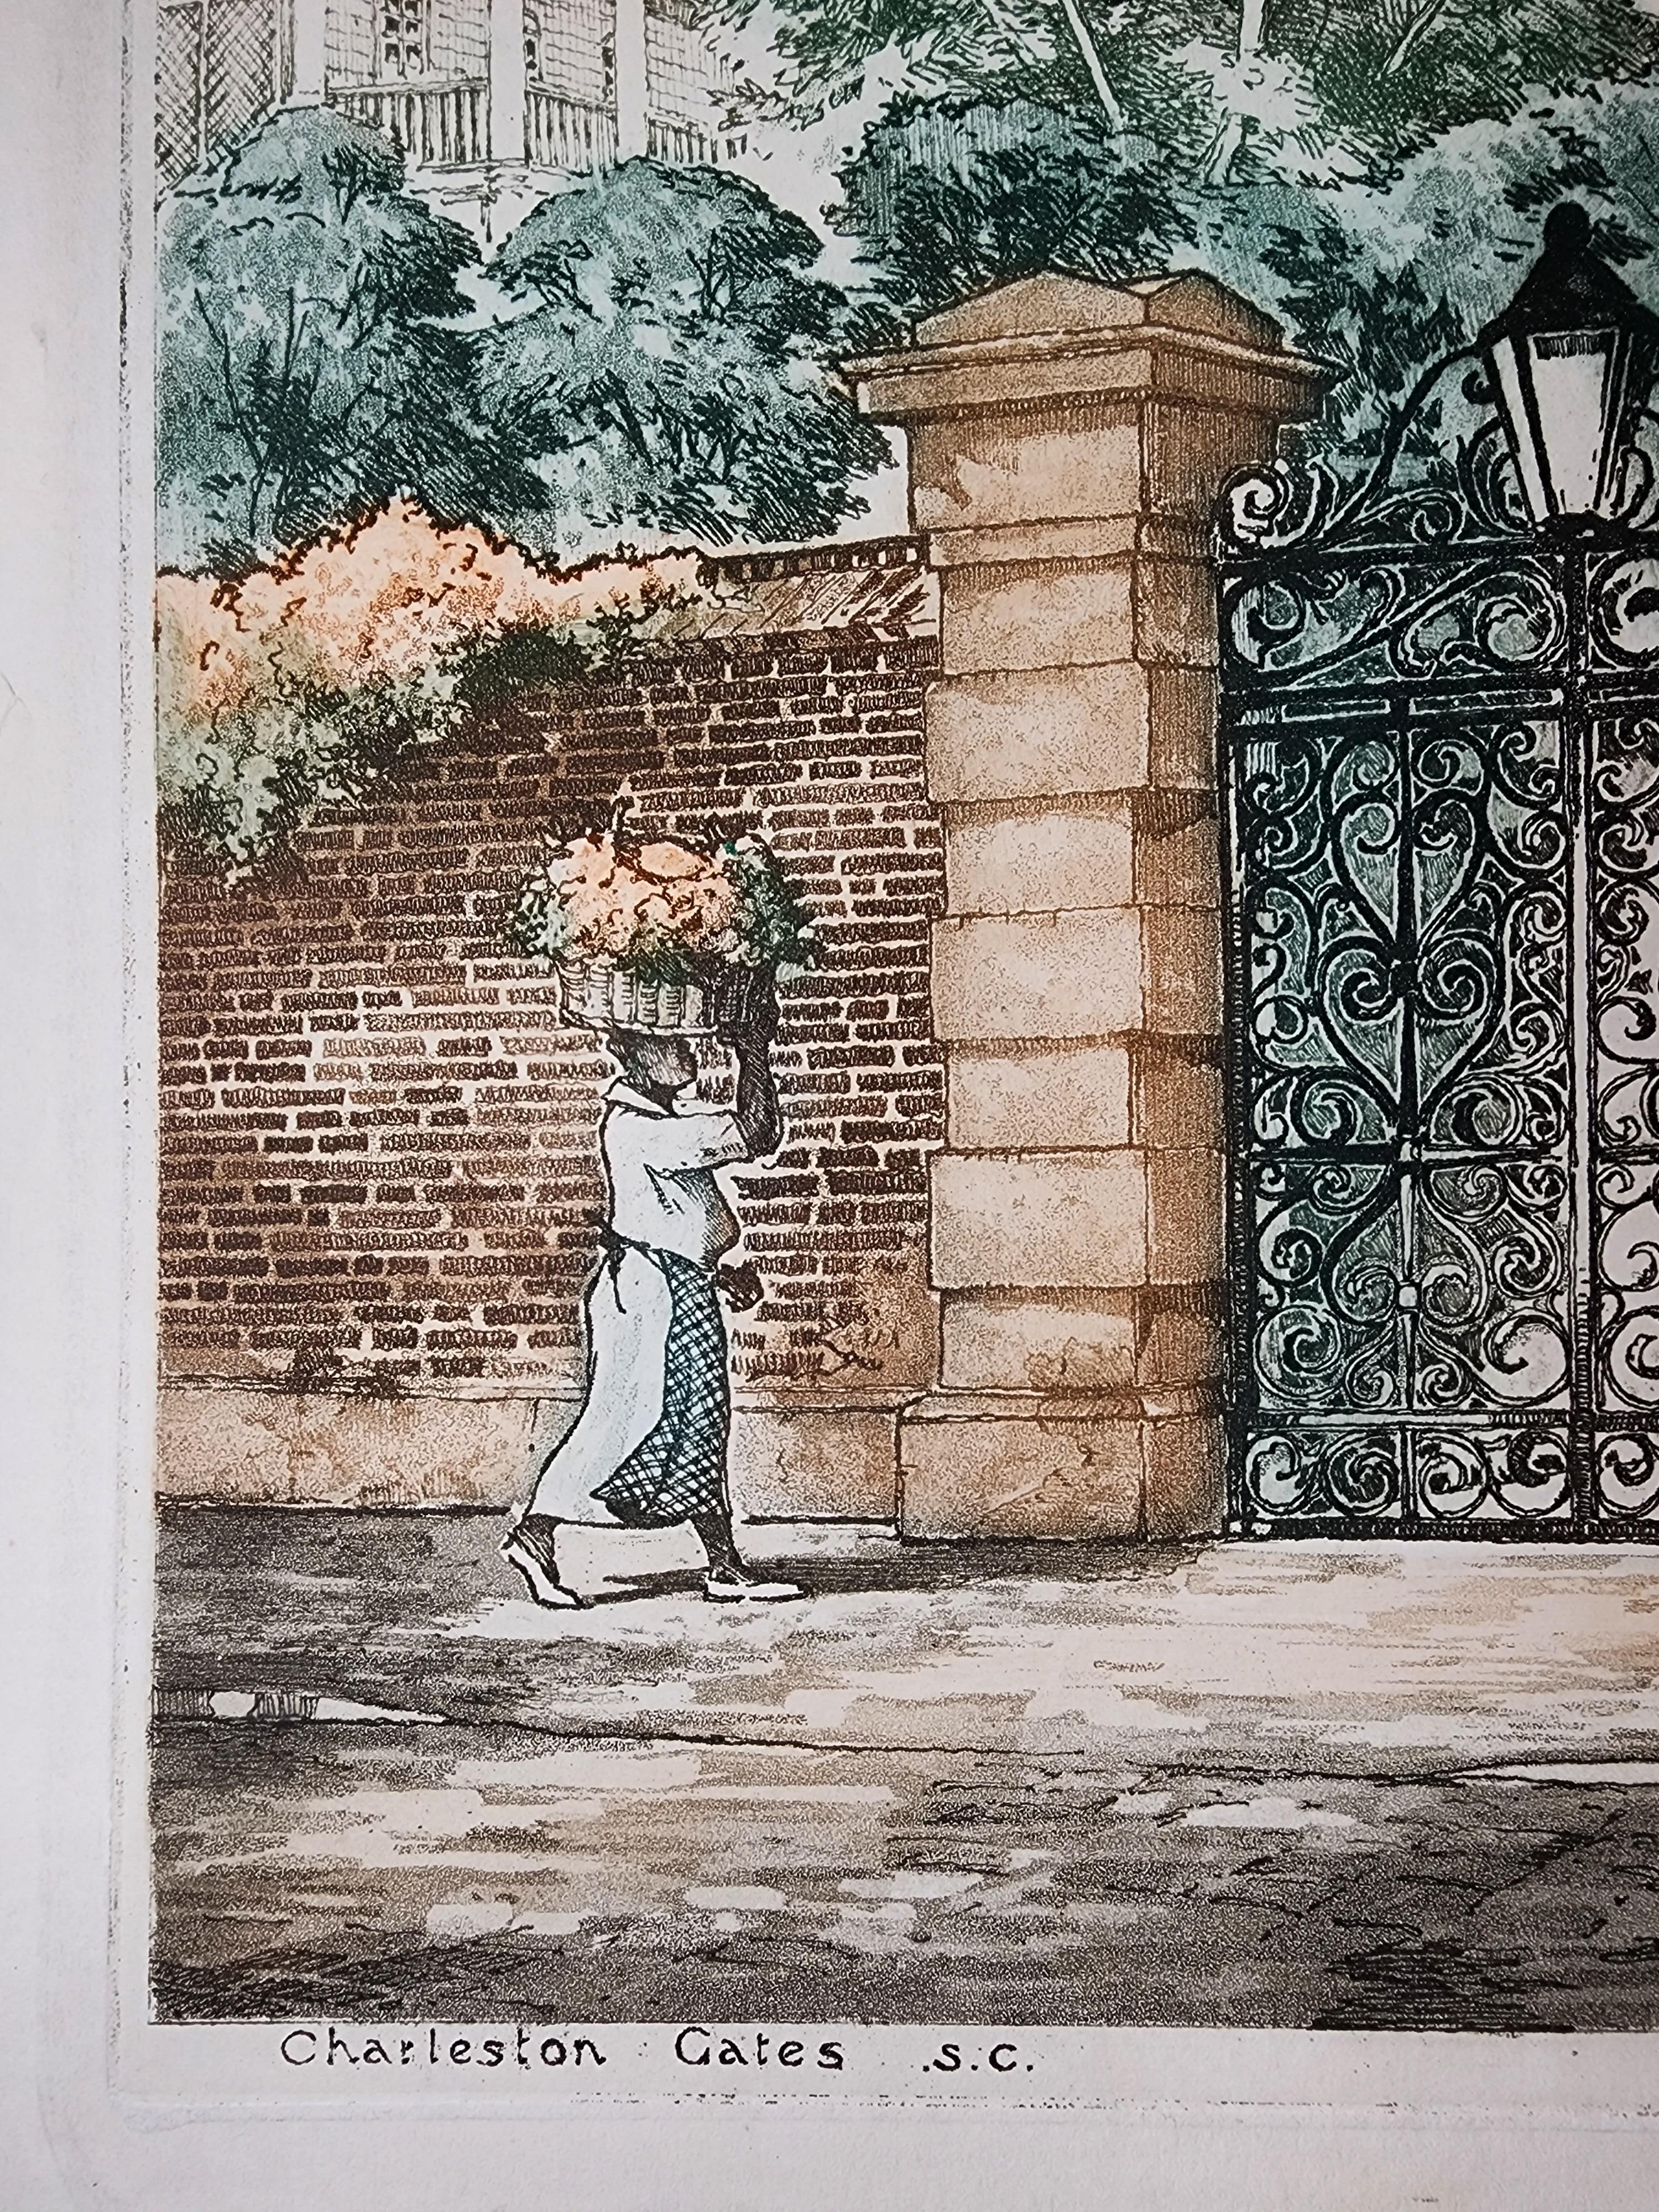 Eine wunderbare Darstellung von Charleston, S.C., mit den schmiedeeisernen Toren und den Blumenfrauen, für die die Stadt bekannt ist.

Das Bild ist in ausgezeichnetem Zustand mit einem starken Plattenrand.  Einige Randfehler weit vom Bild entfernt.